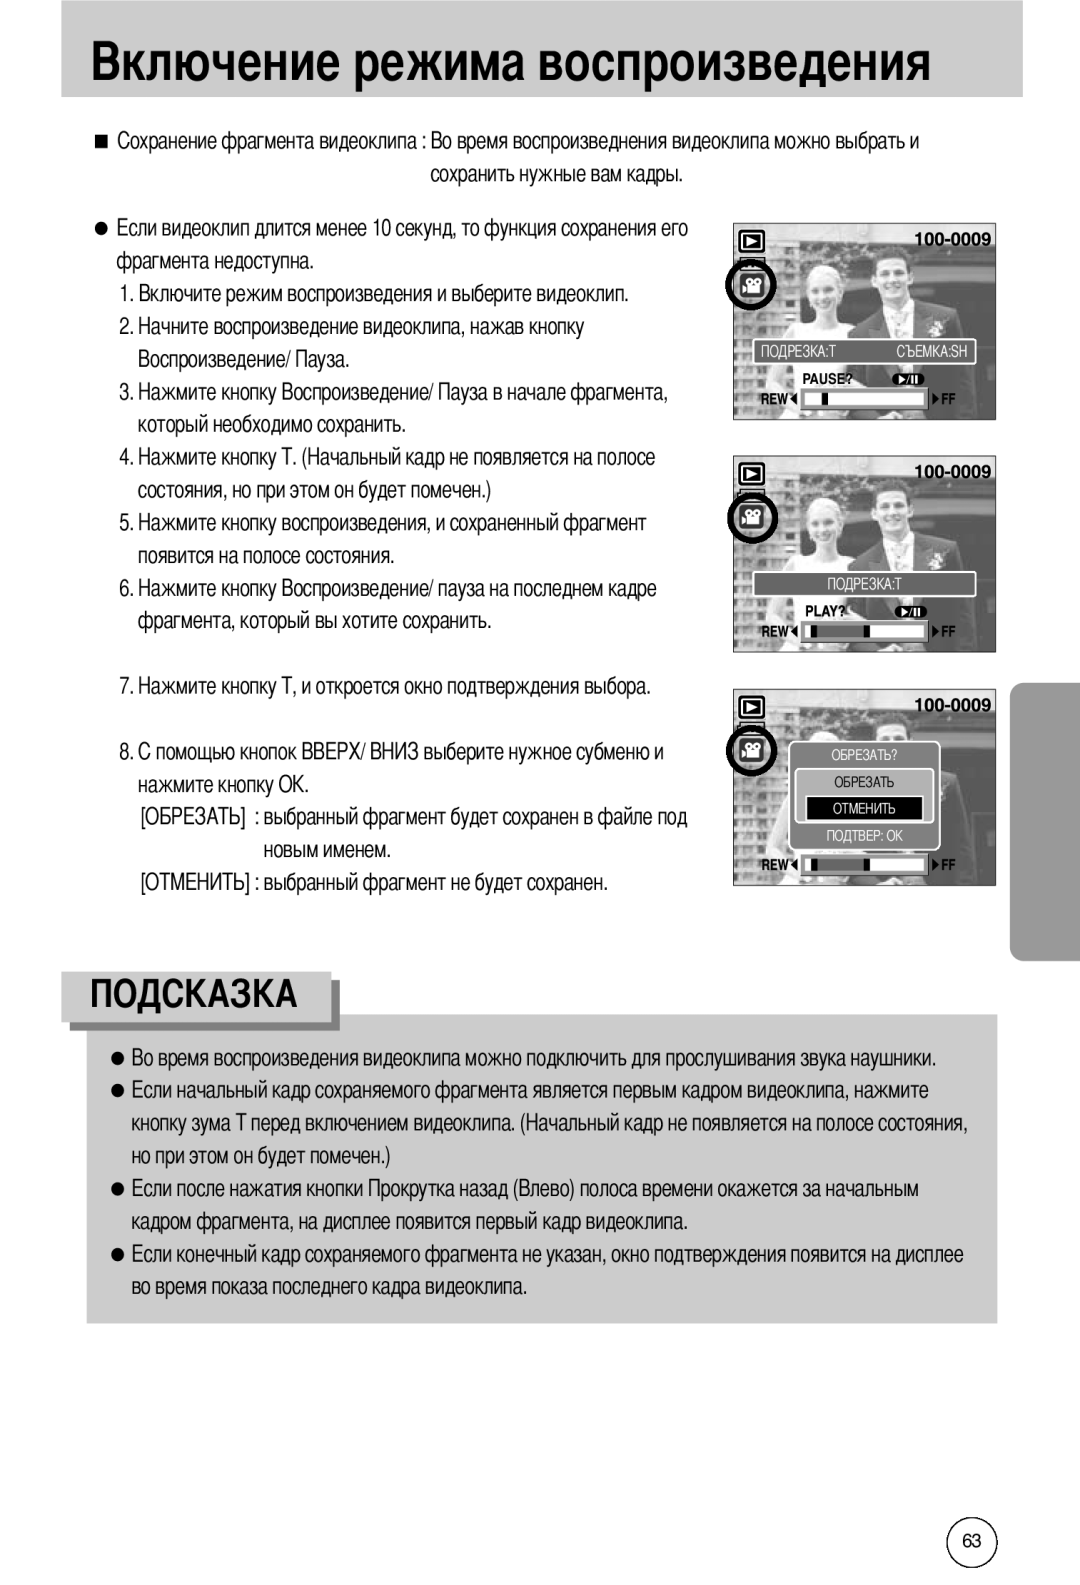 Samsung EC-I50ZZSBB/AS manual О выбранный фрагмент будет сохранен в файле под новым именем, сохранить нужные вам кадры 